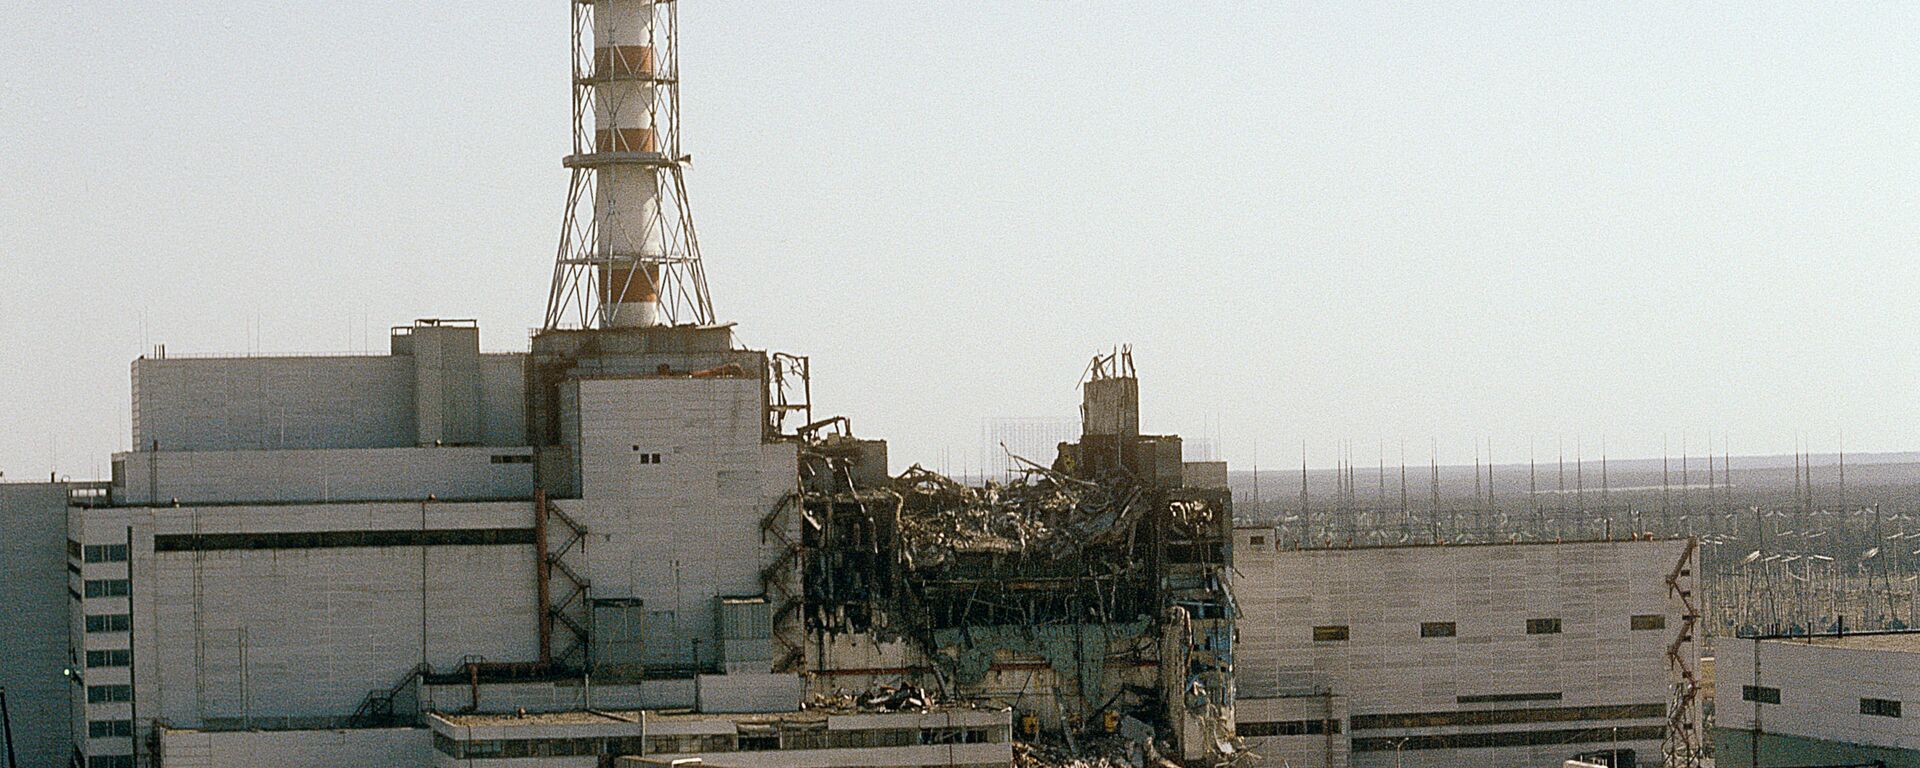  Вид на Чернобыльскую АЭС со стороны четвертого реактора, 1986 год - Sputnik Latvija, 1920, 19.06.2019